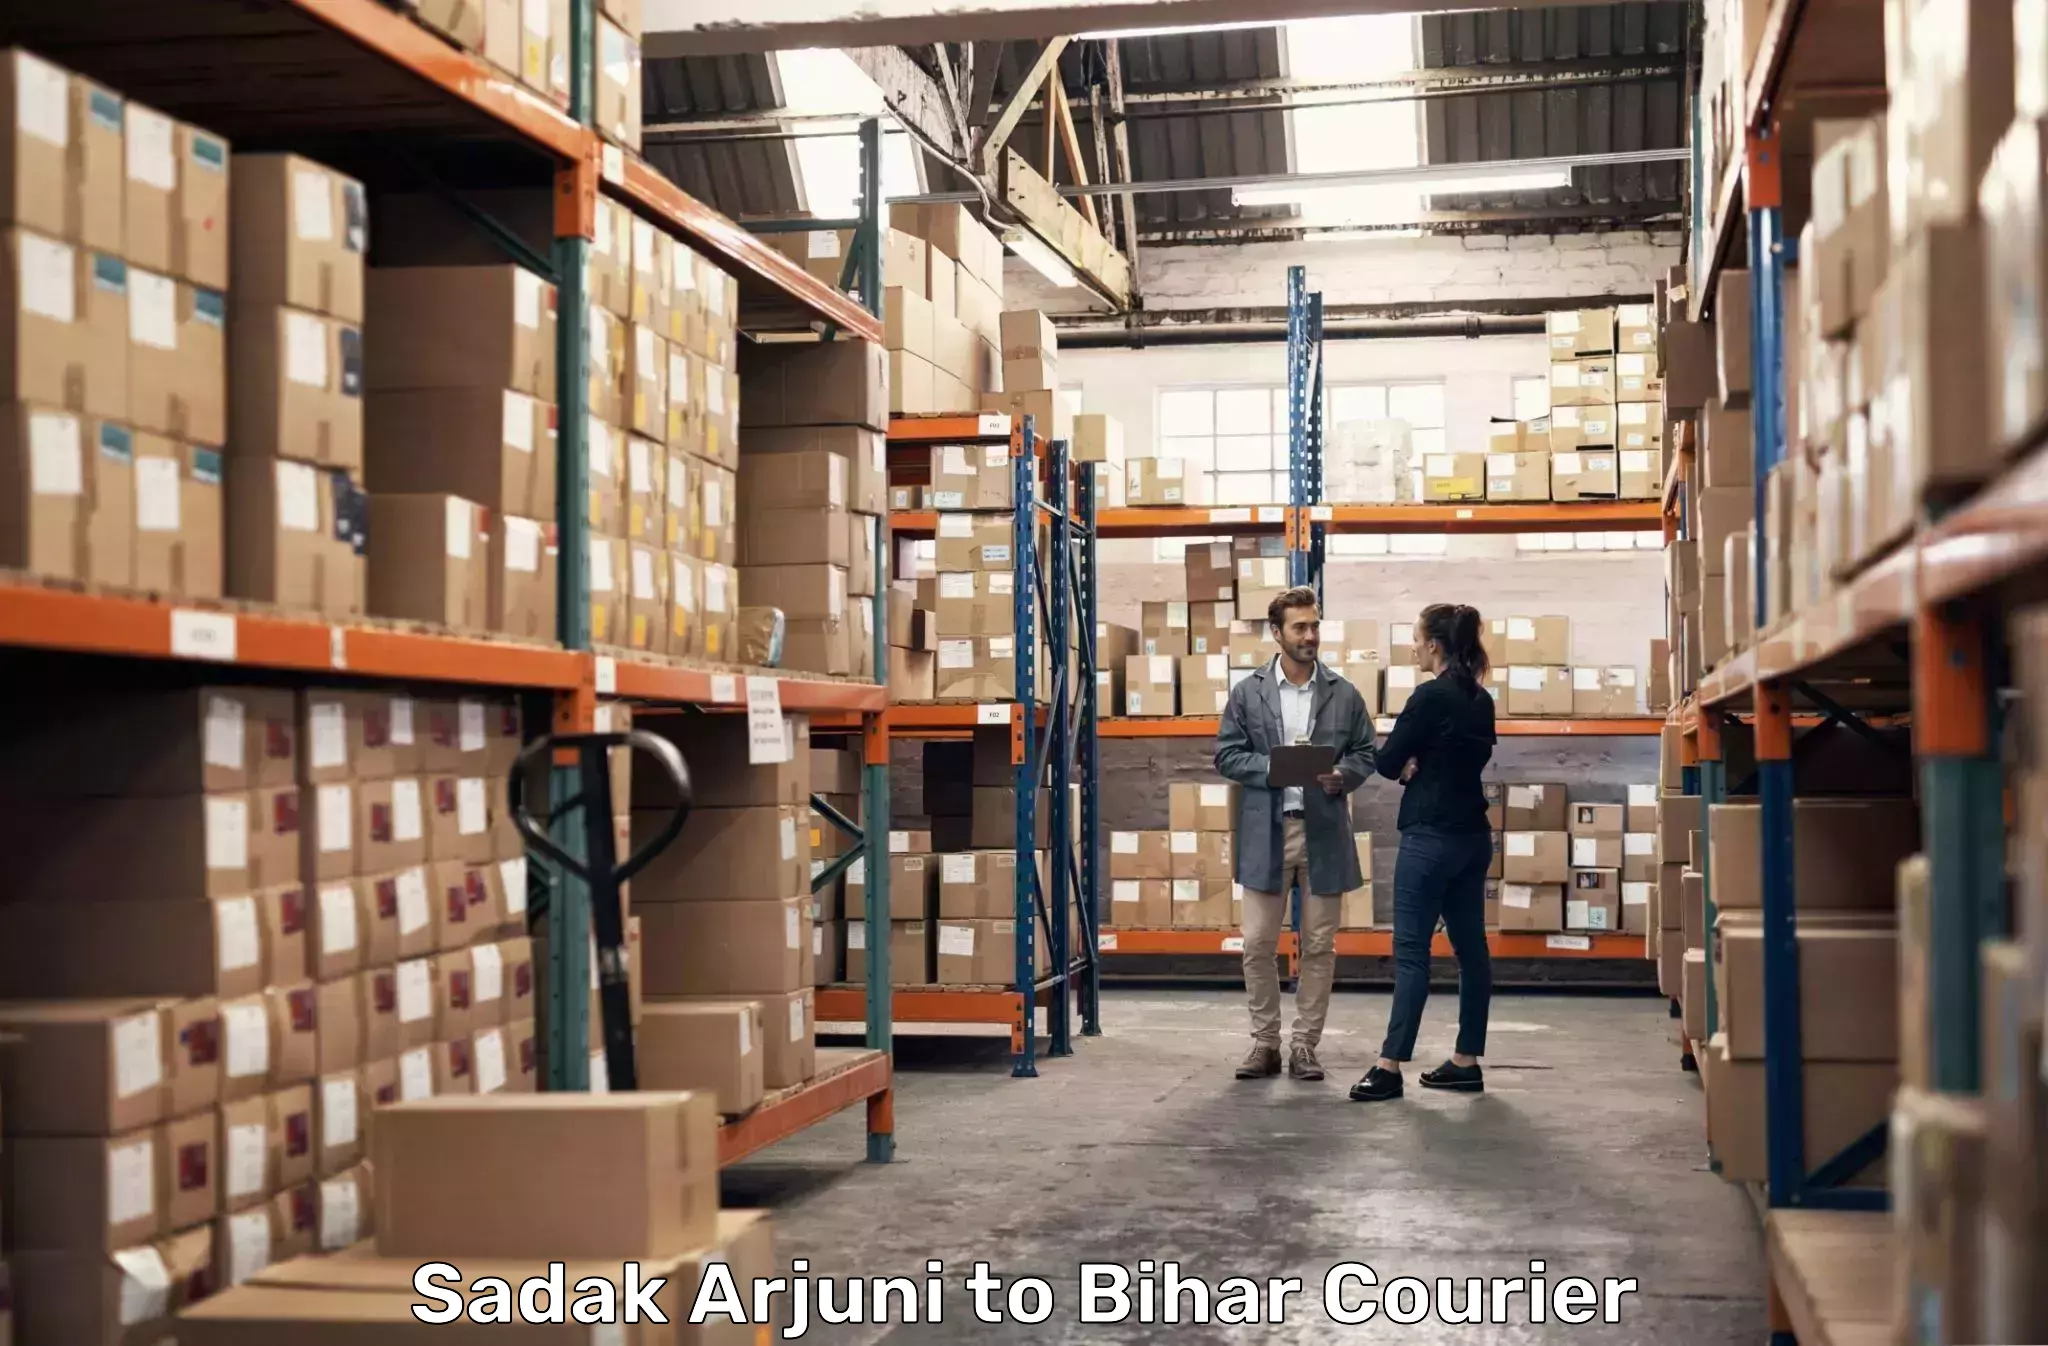 High-capacity parcel service Sadak Arjuni to Gopalganj